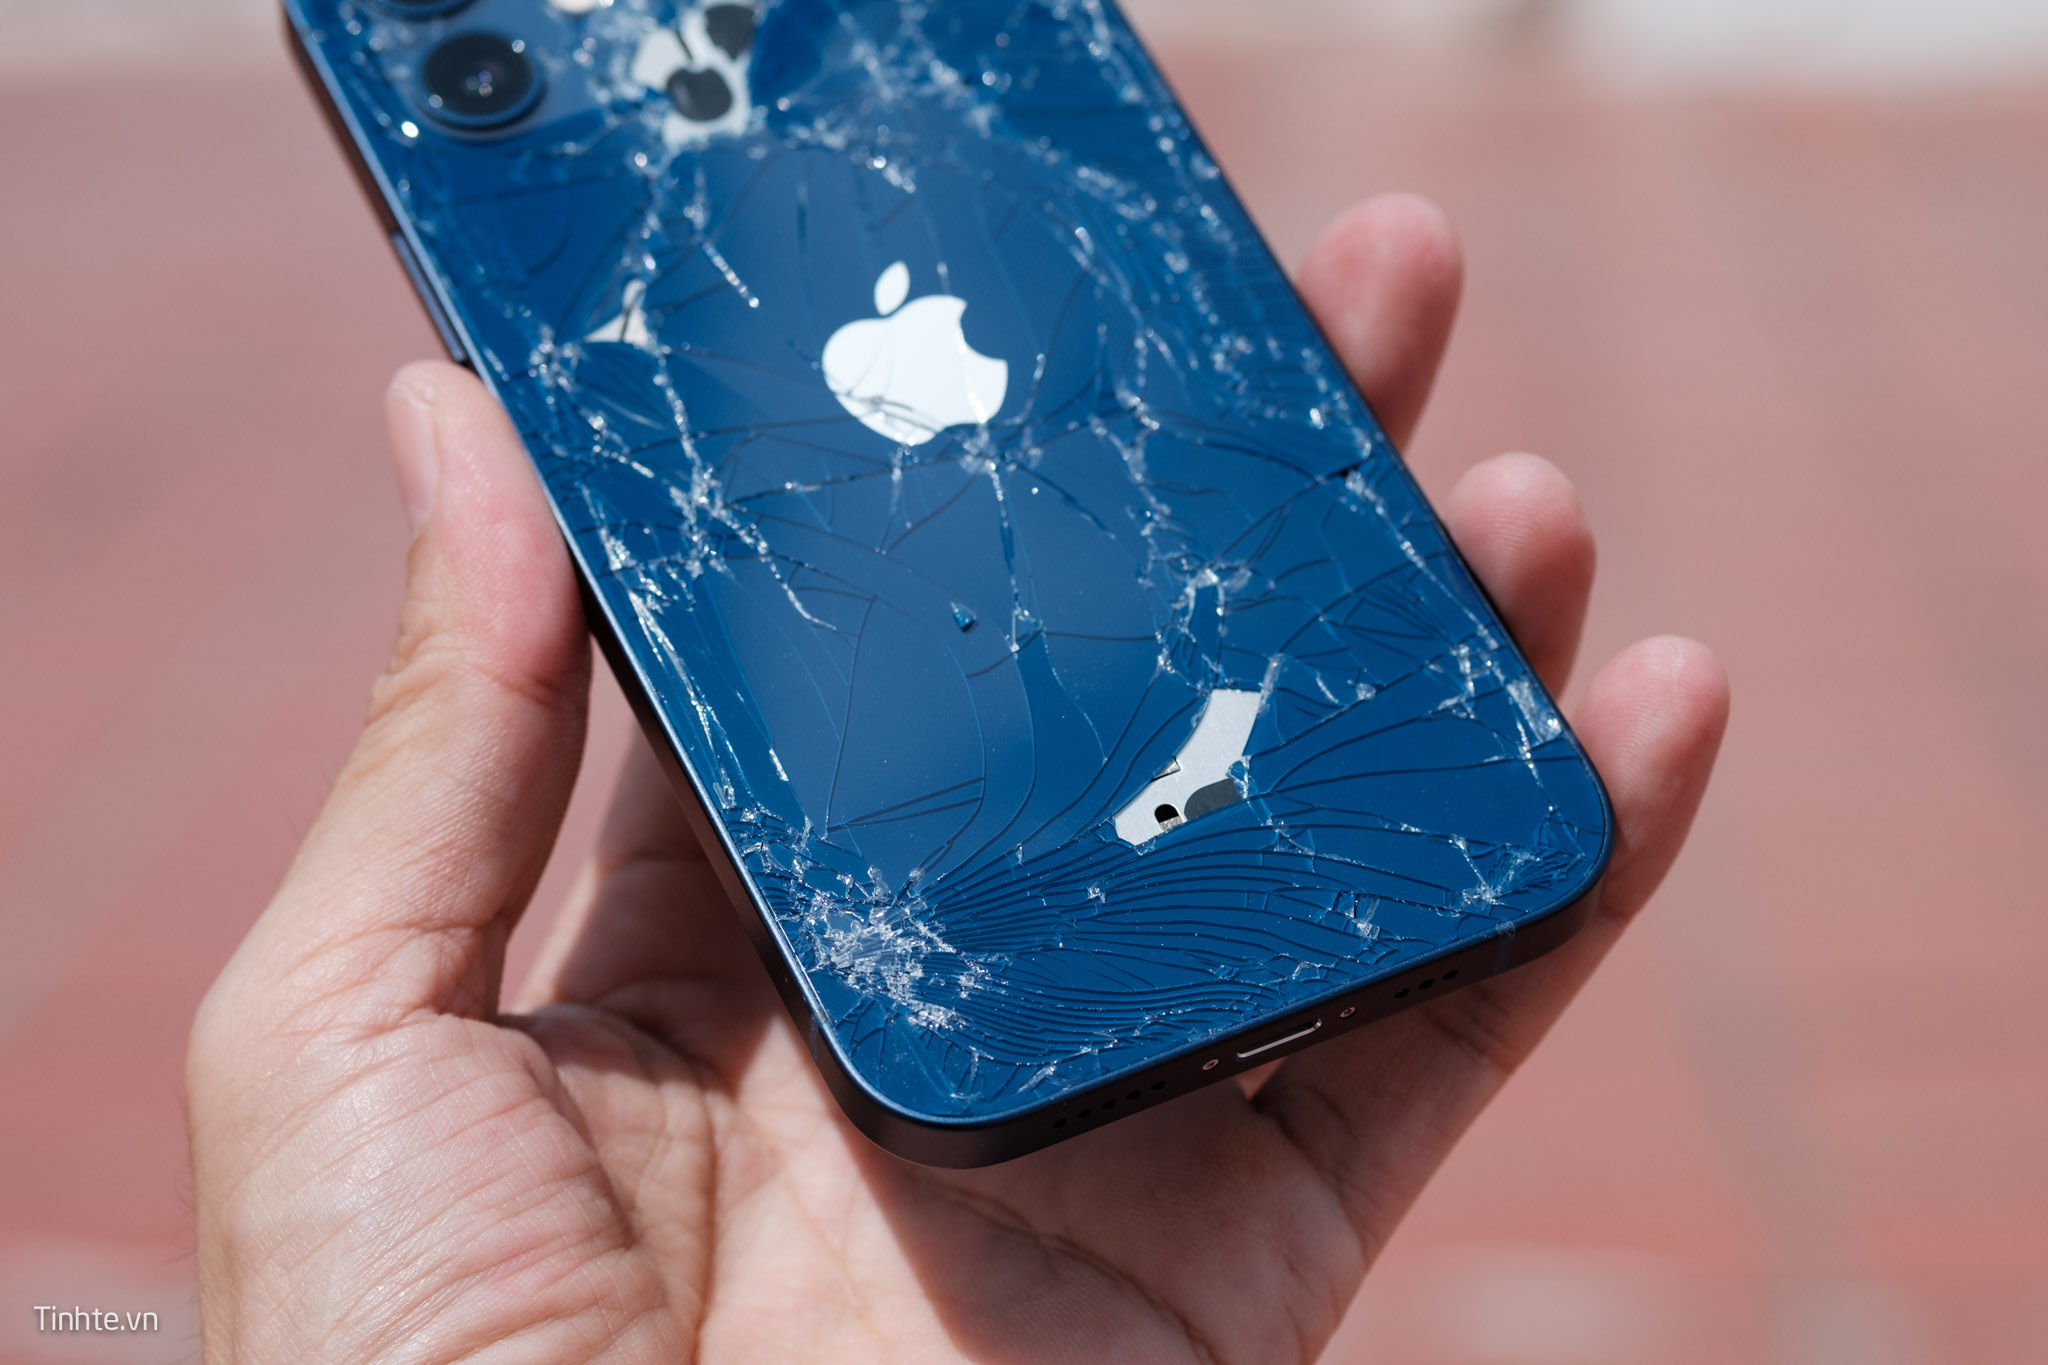 Cách xử lý màn hình iPhone X bị vỡ, có thể bạn chưa biết?